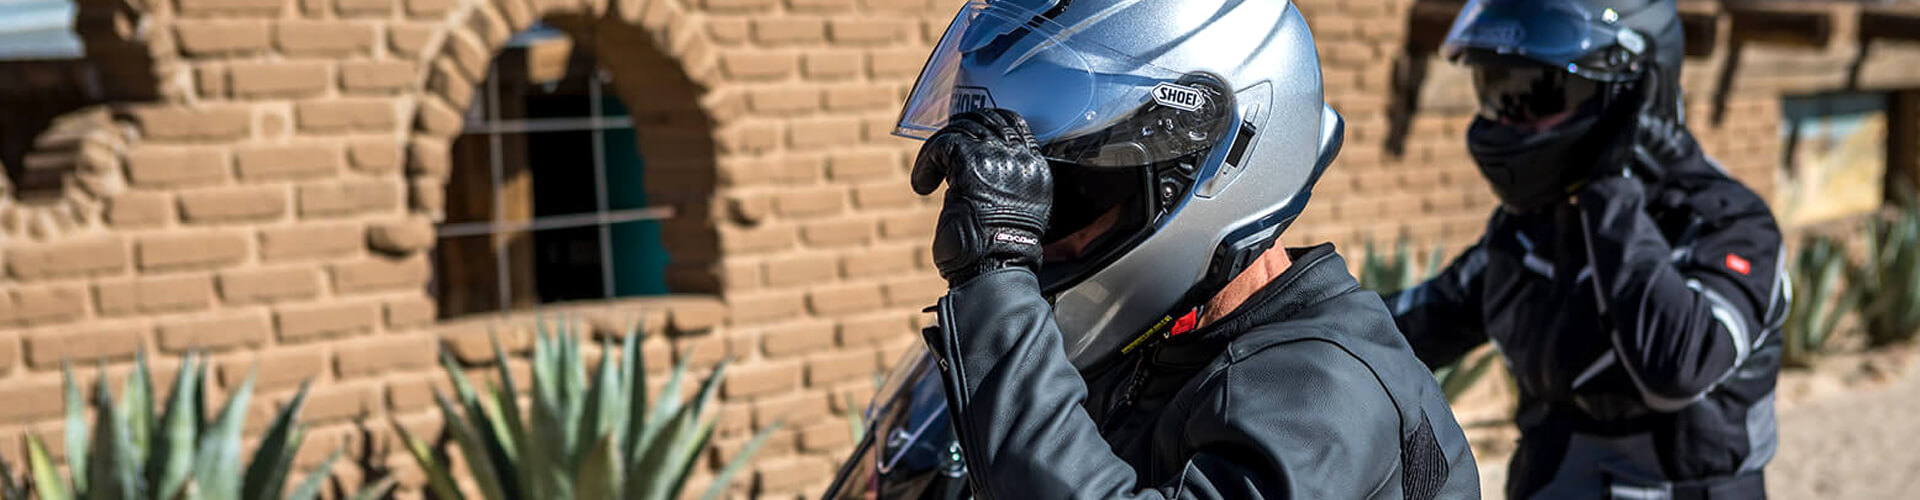 Accessoires moto casque homme - Équipement moto